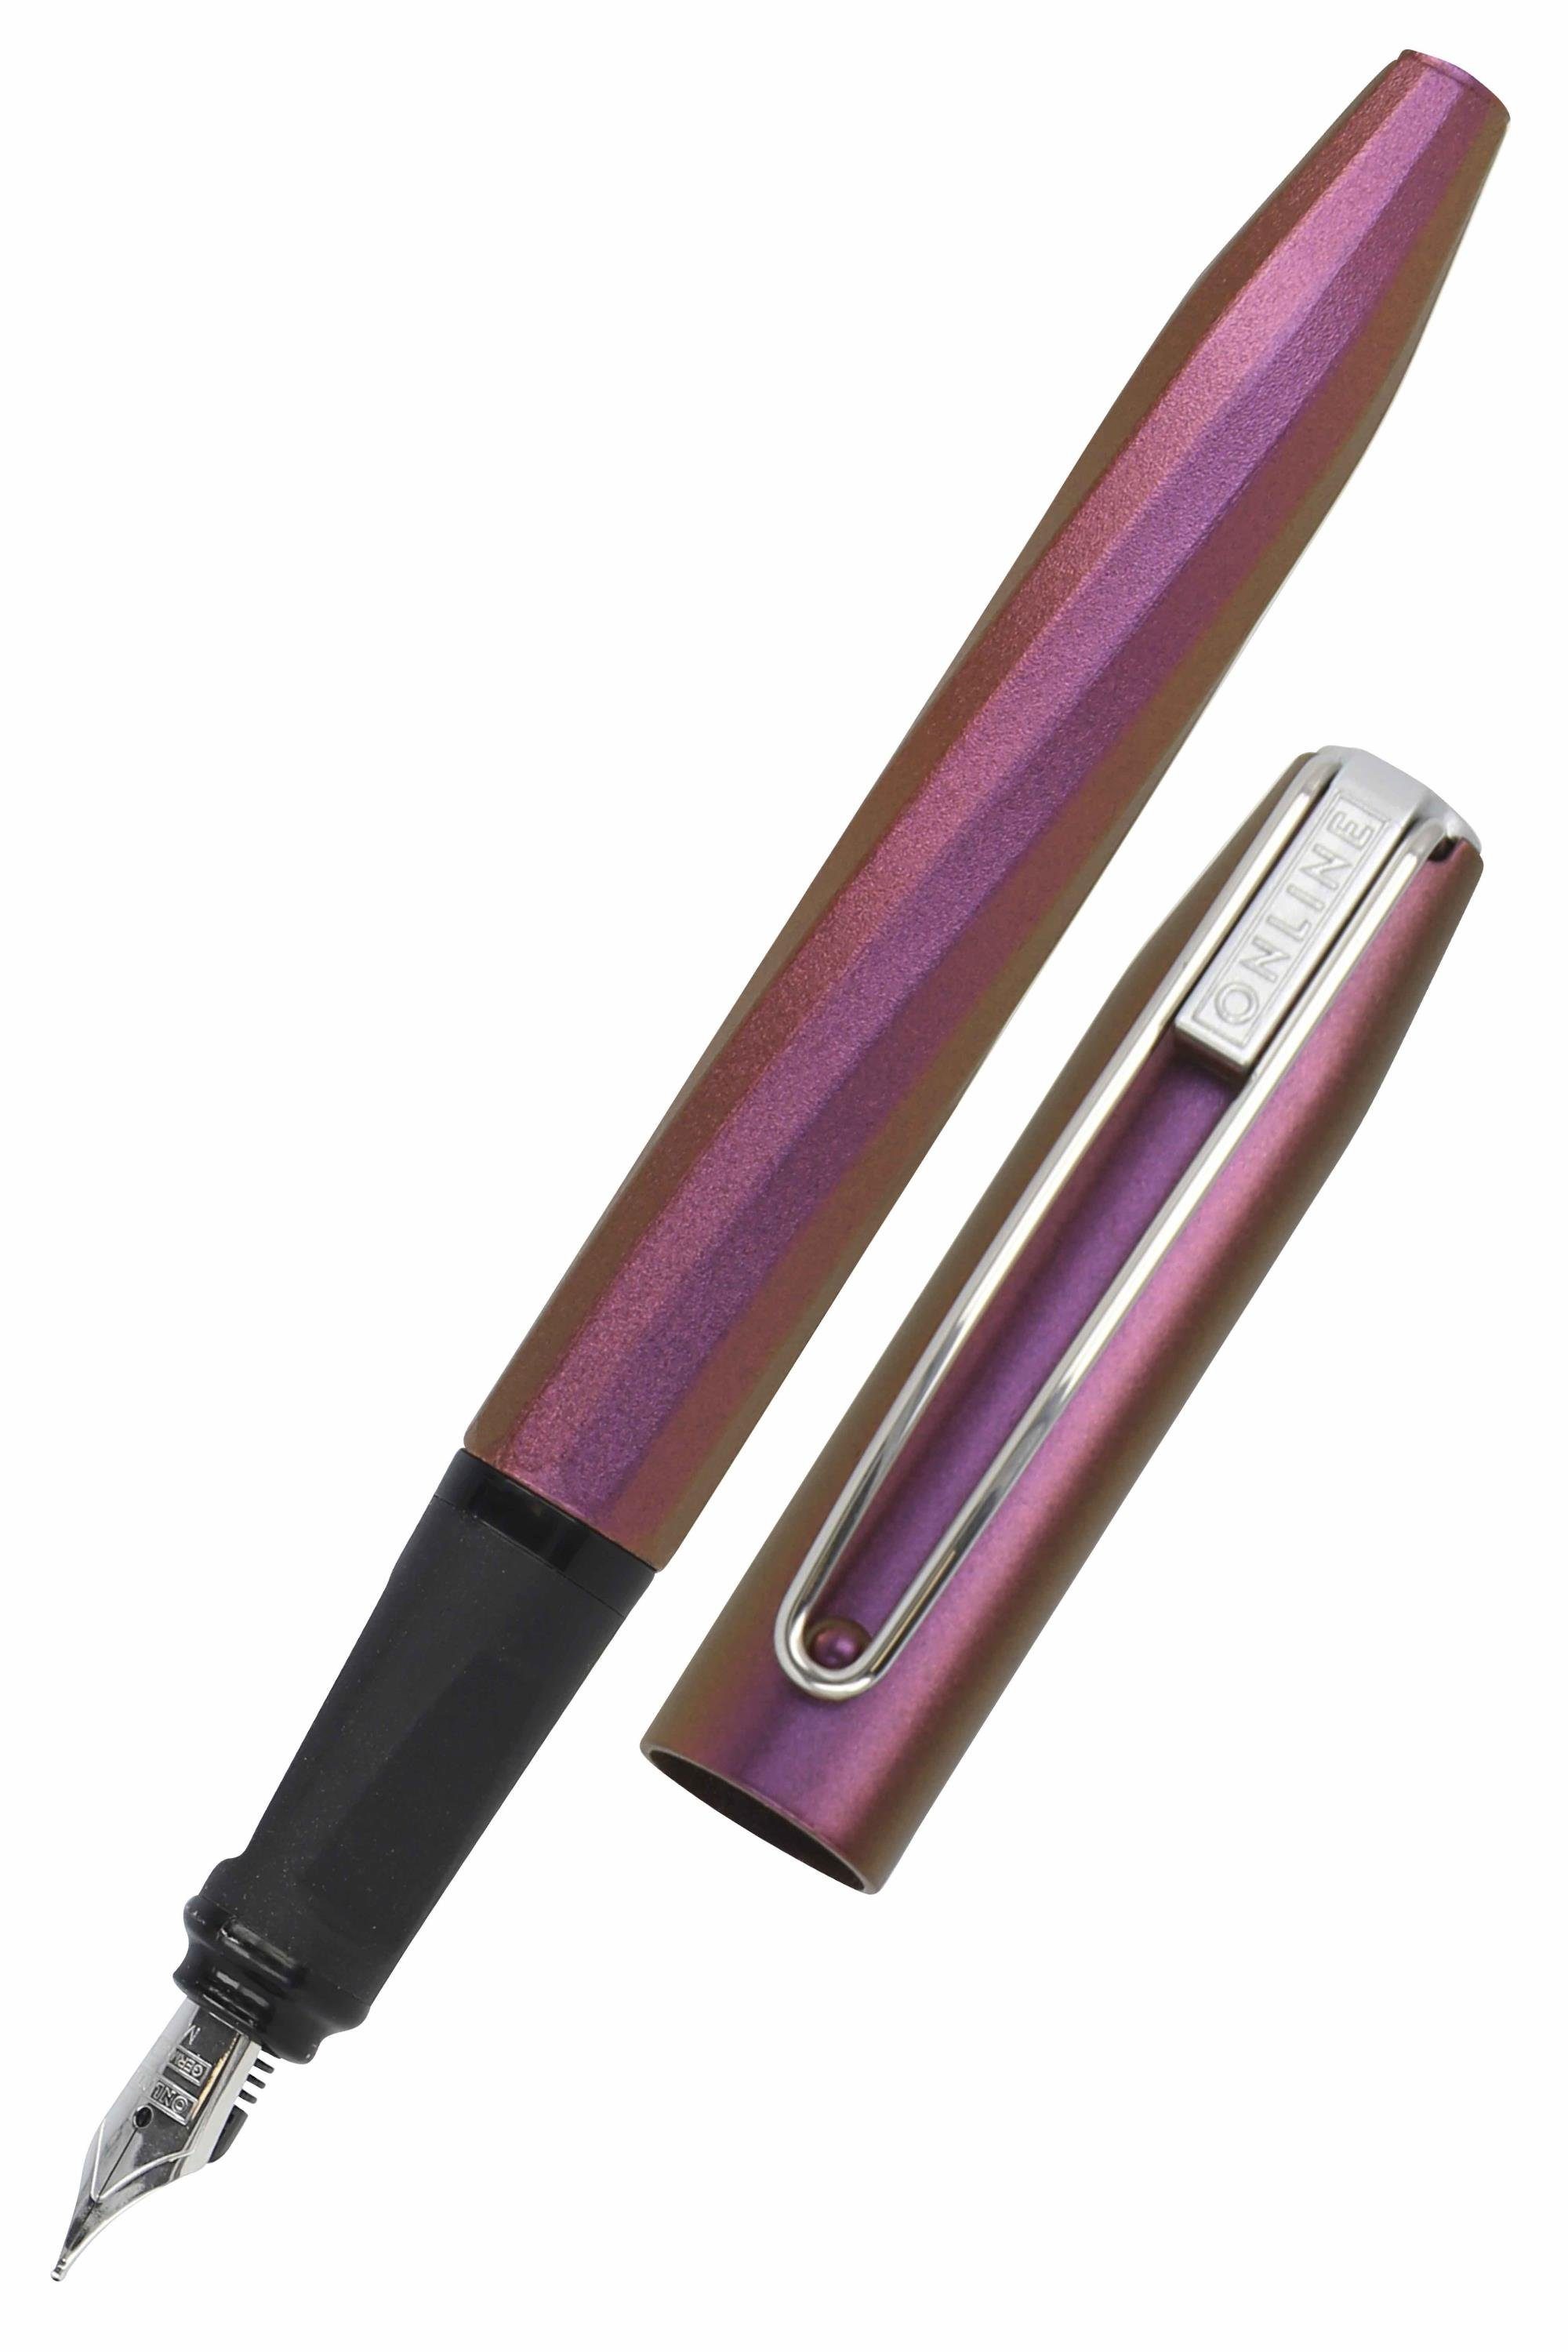 Tintenpatrone Slope, Pen ergonomisch, Schule, inkl. für Online Pink Füller ideal die